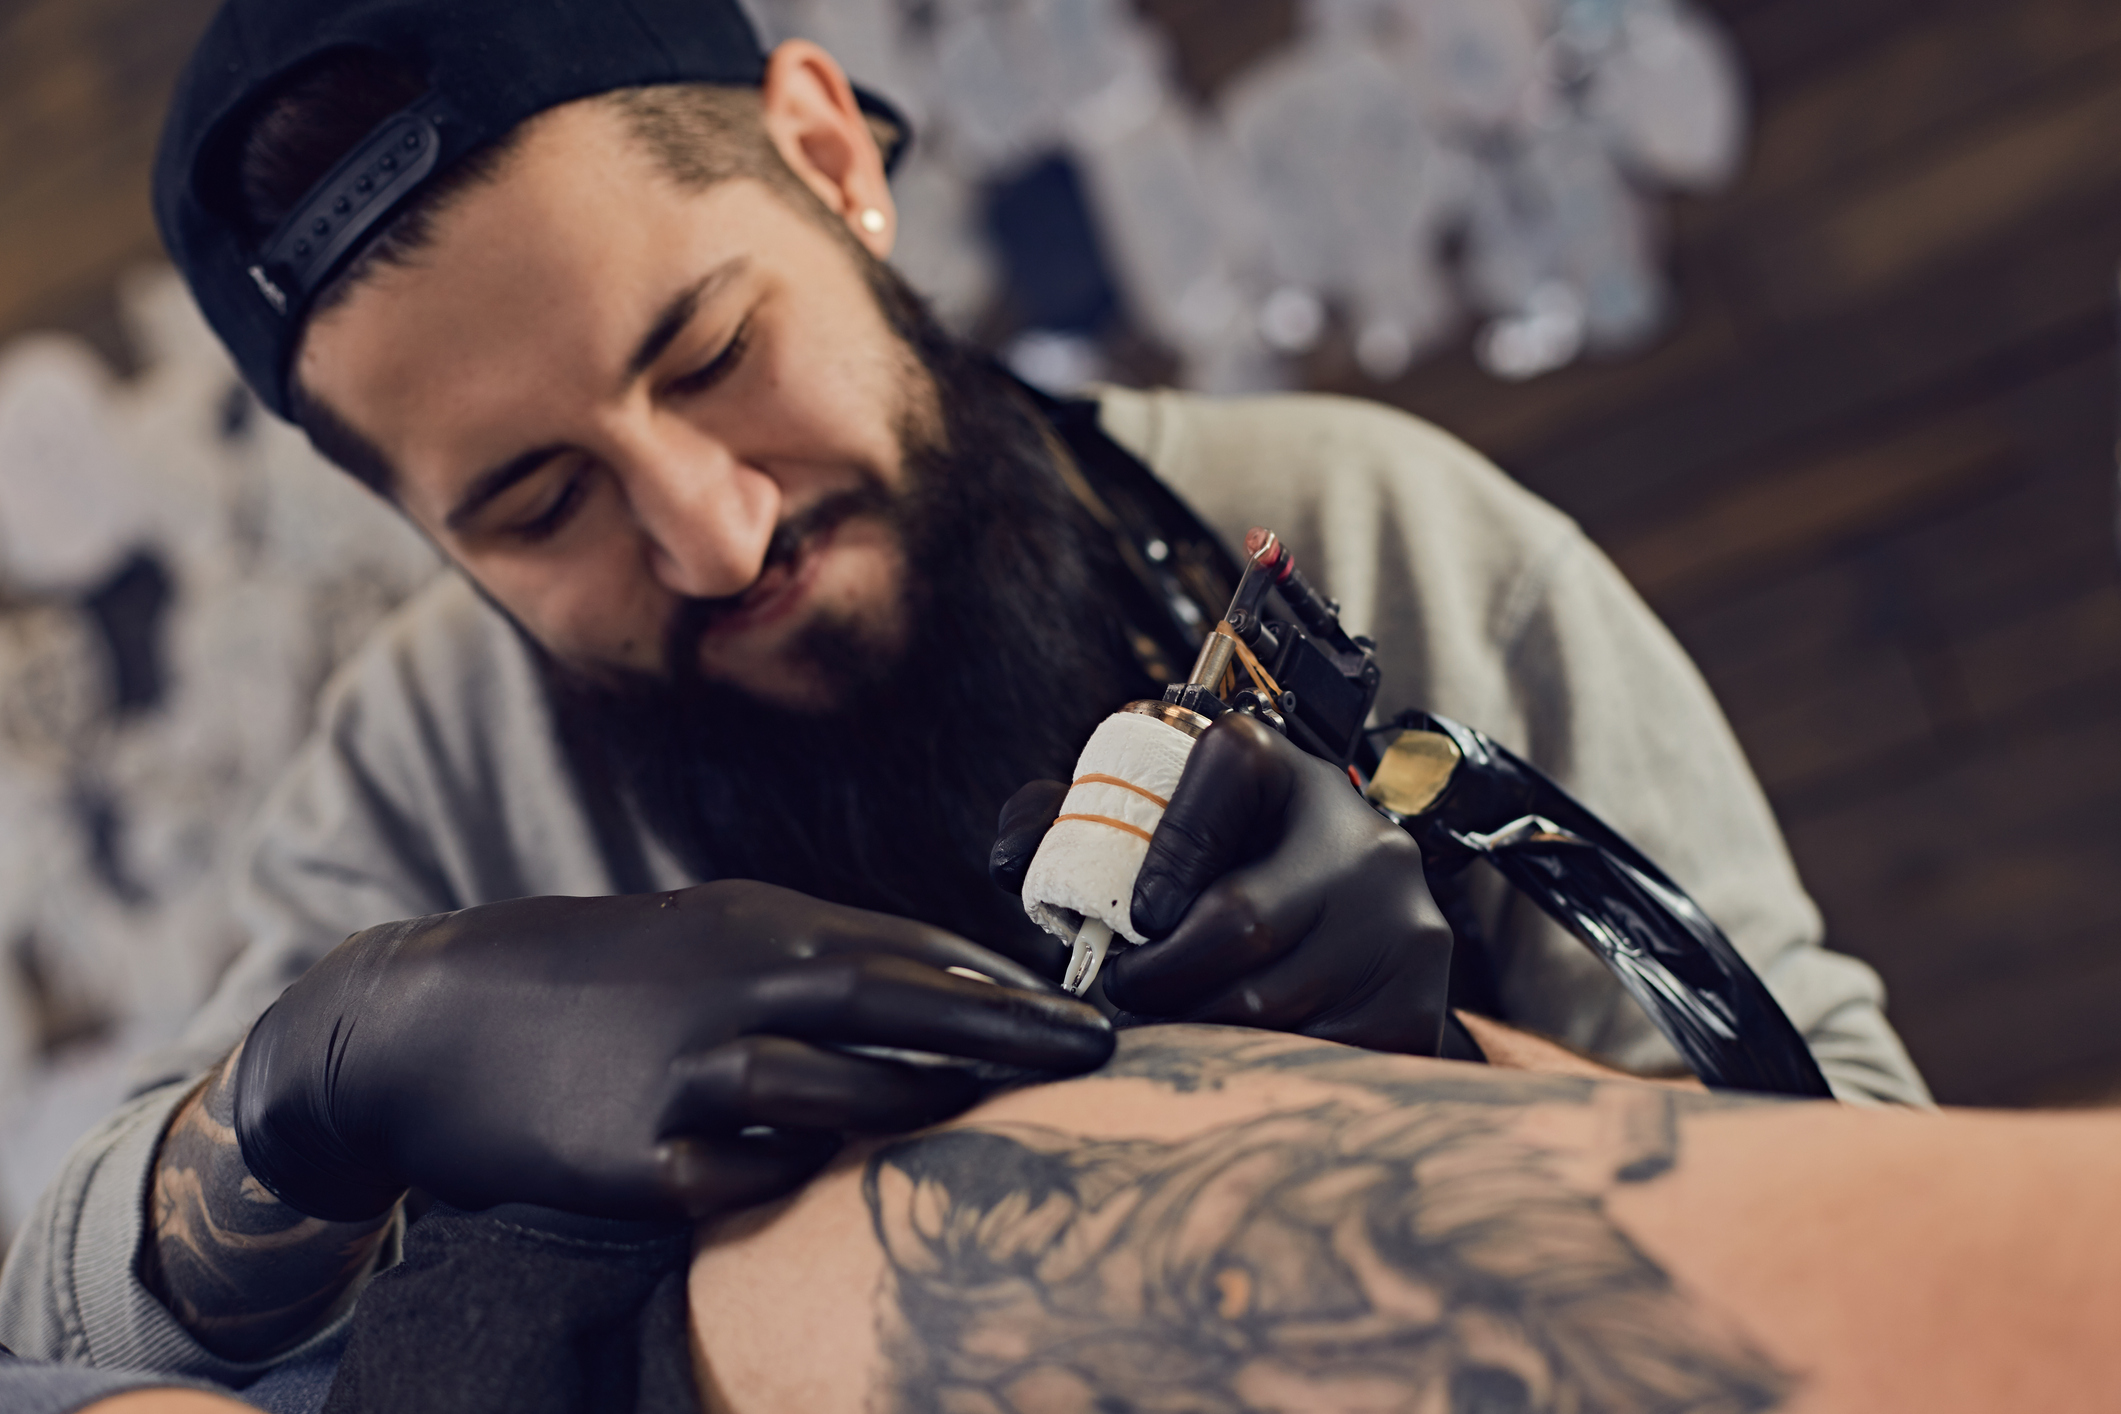 Semicolon tattoo | Subtle tattoos, Classy tattoos, Cute hand tattoos